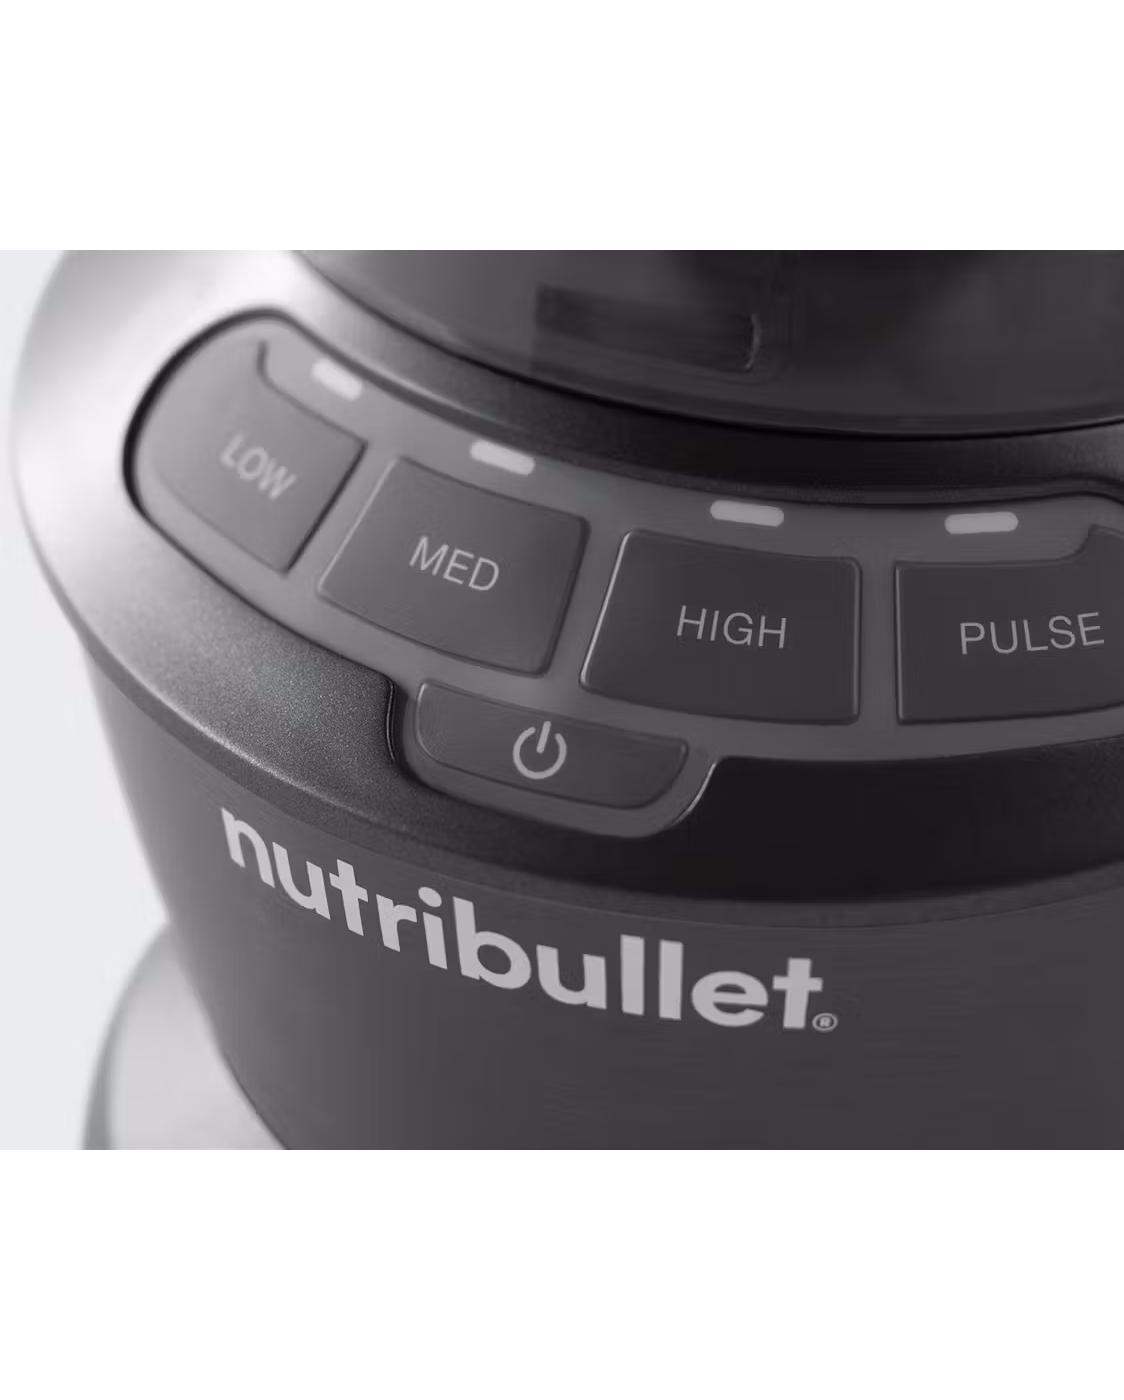 nutribullet 1200-Watt Full Size Blender; image 2 of 6